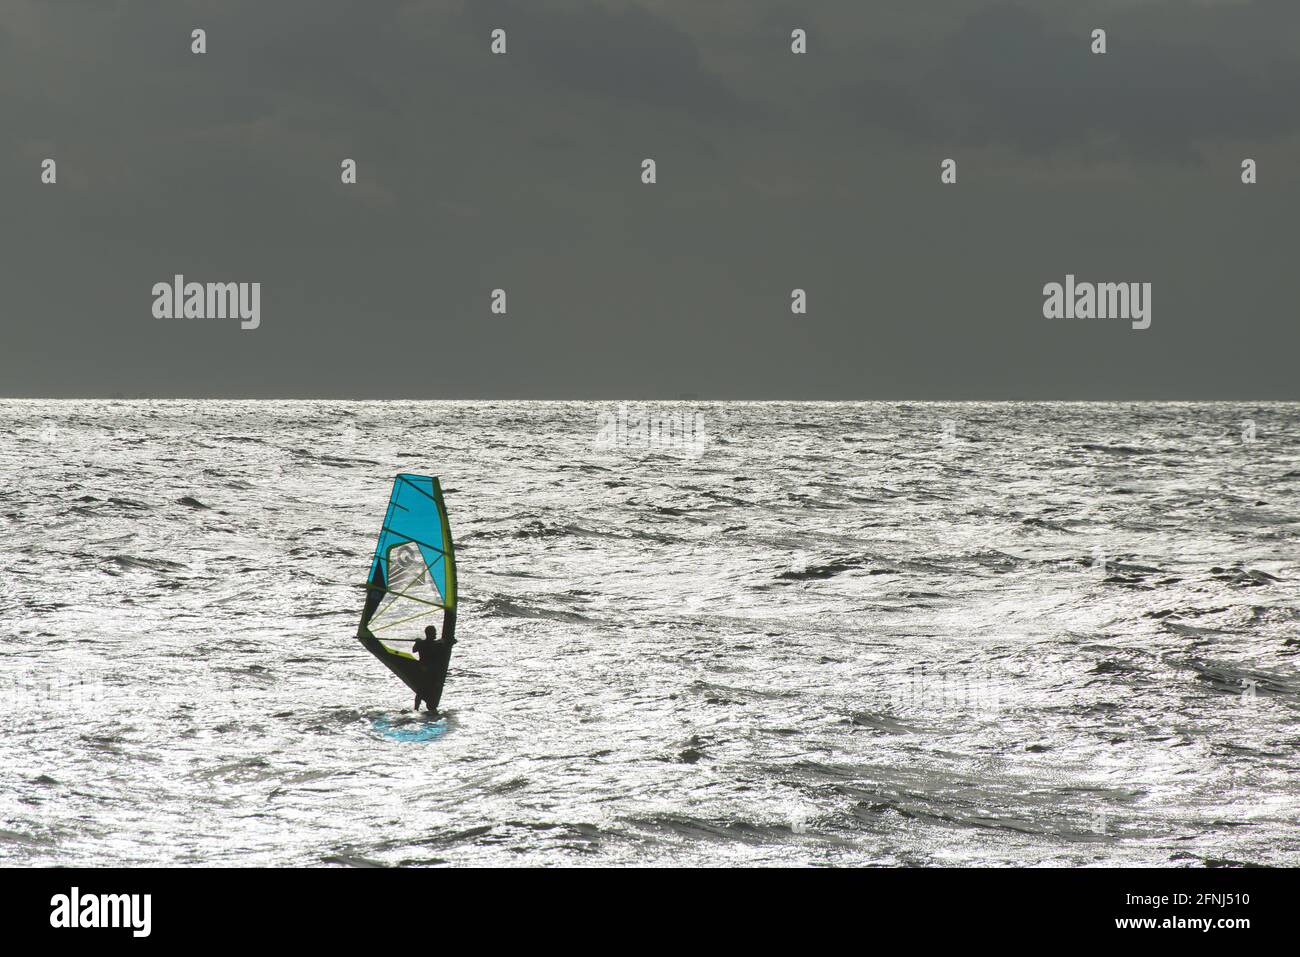 Immagine memorabile di un singolo windsurf con vela blu un mare argentato con orizzonte argentato che separa lo sfondo del cielo scuro Foto Stock